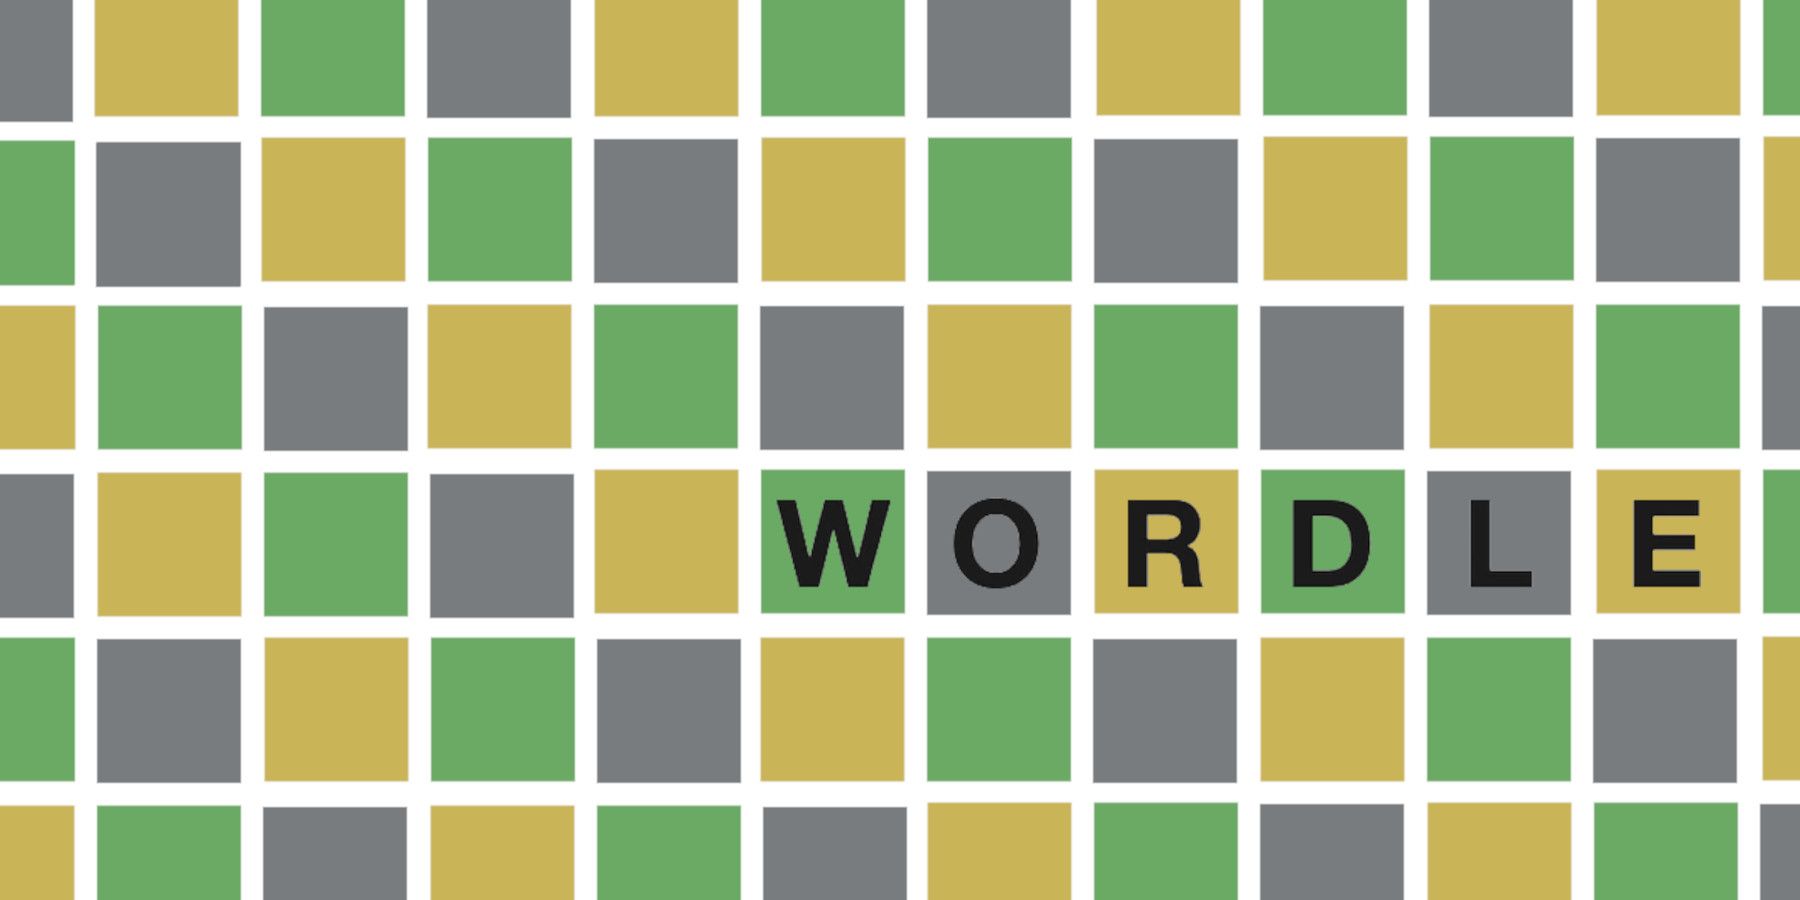 17 Jun Jawapan Wordle 363